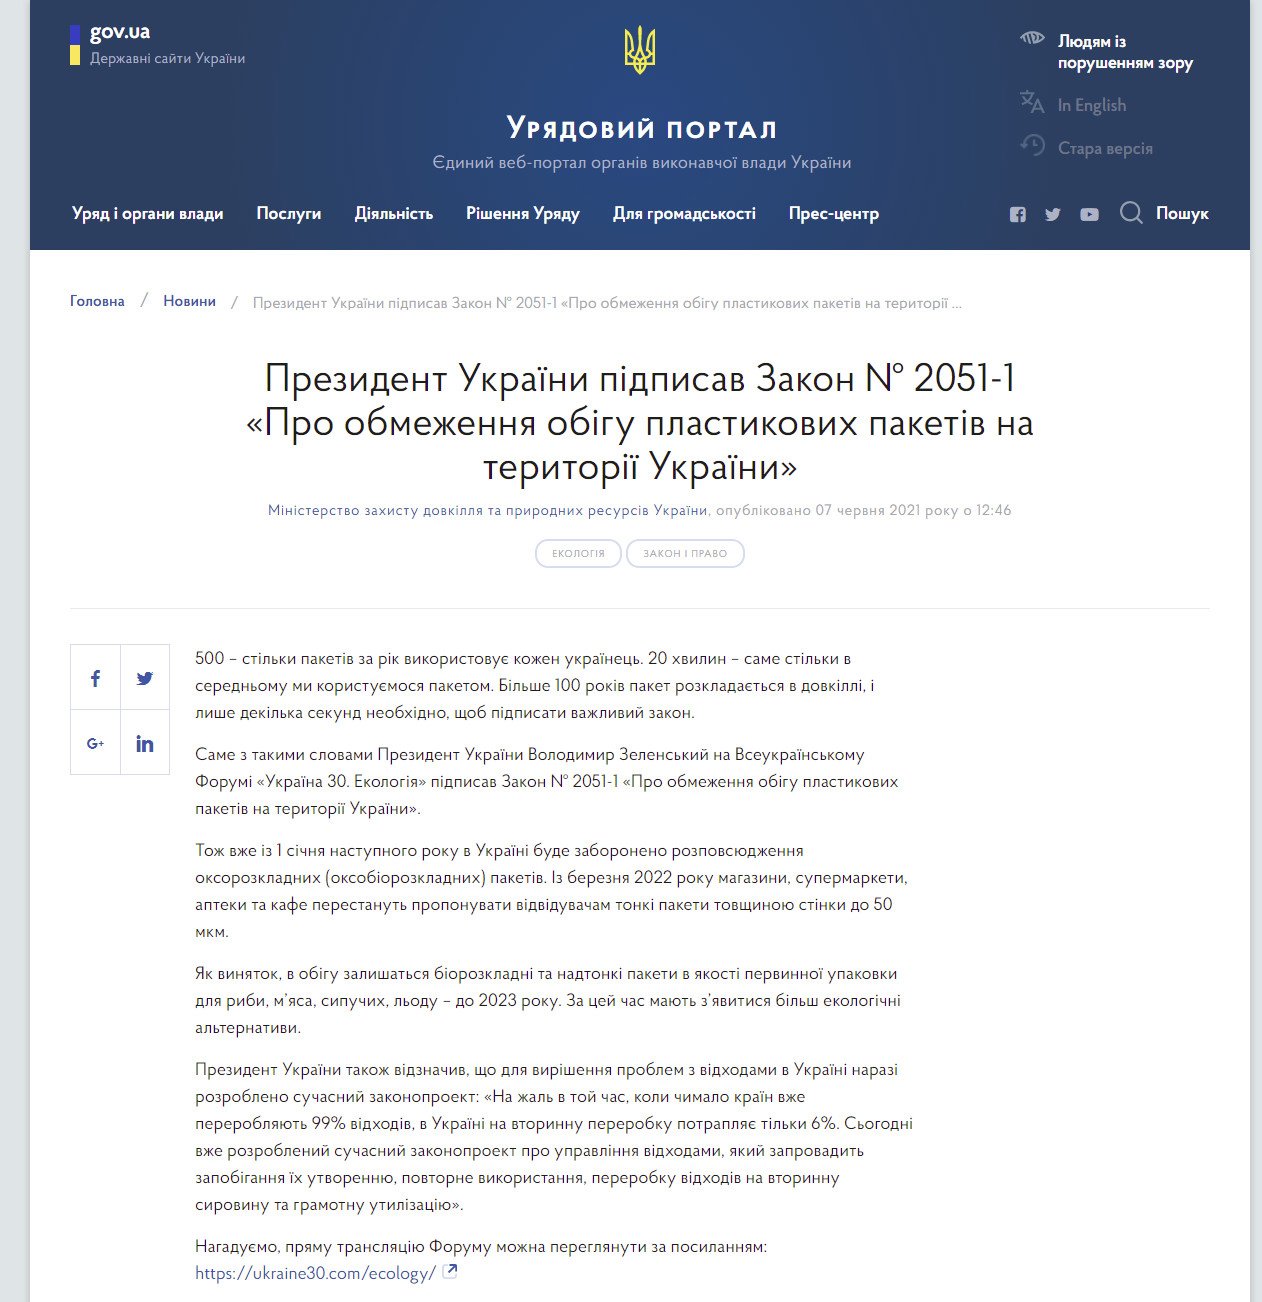 https://www.kmu.gov.ua/news/prezident-ukrayini-pidpisav-zakon-2051-1-pro-obmezhennya-obigu-plastikovih-paketiv-na-teritoriyi-ukrayini